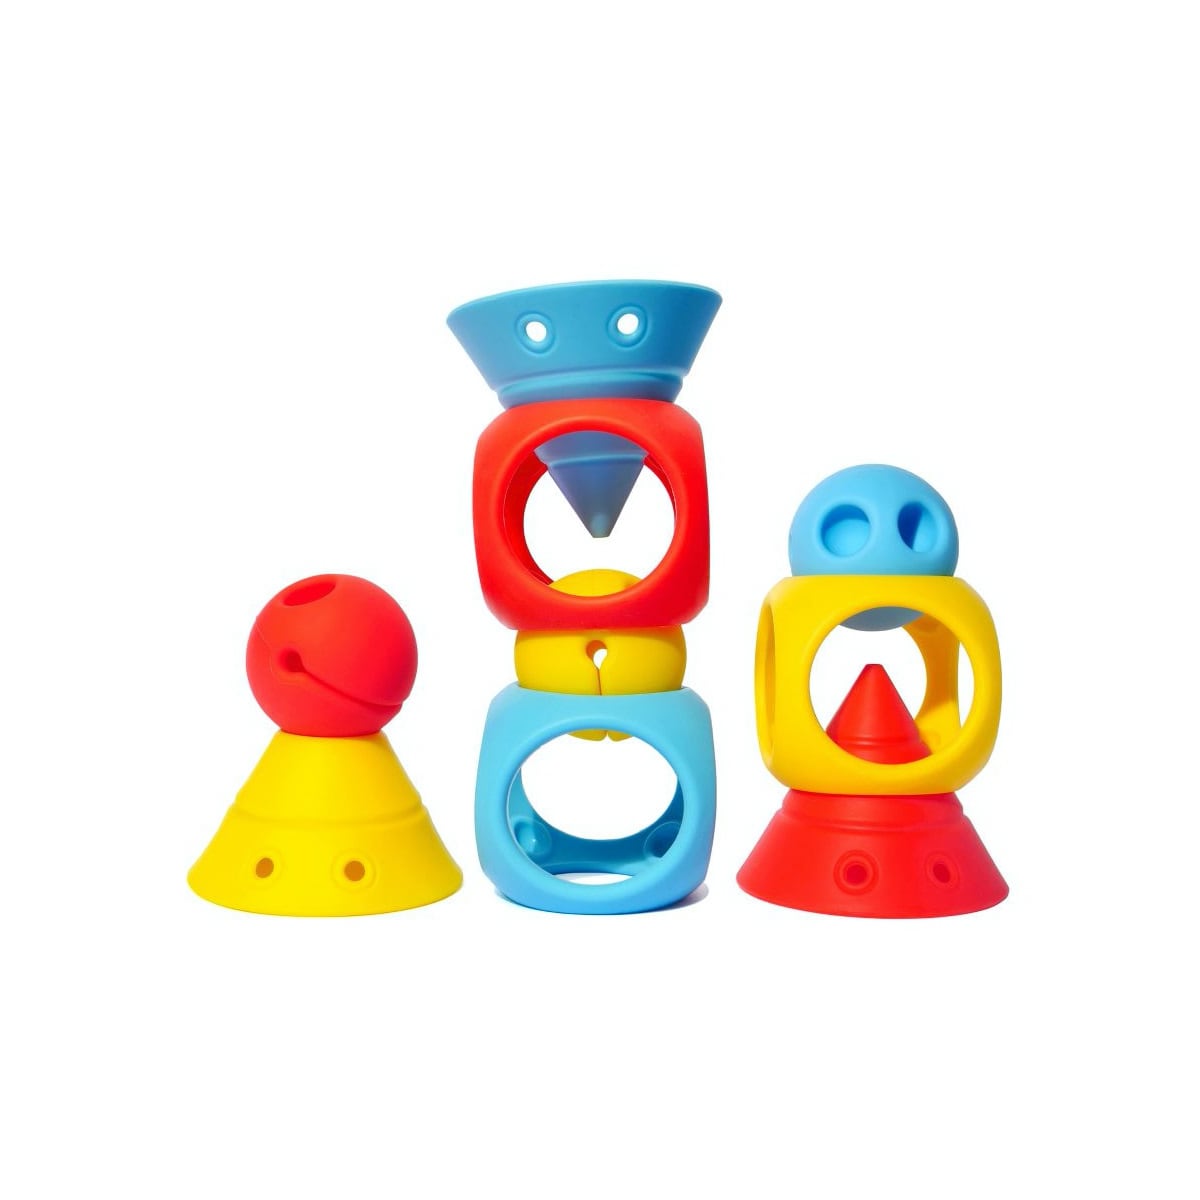 Moluk - zestaw kreatywnych zabawek do budowania Moluk Building Genius (9 szt.) kolorowe #wariant_podstawowe kolory